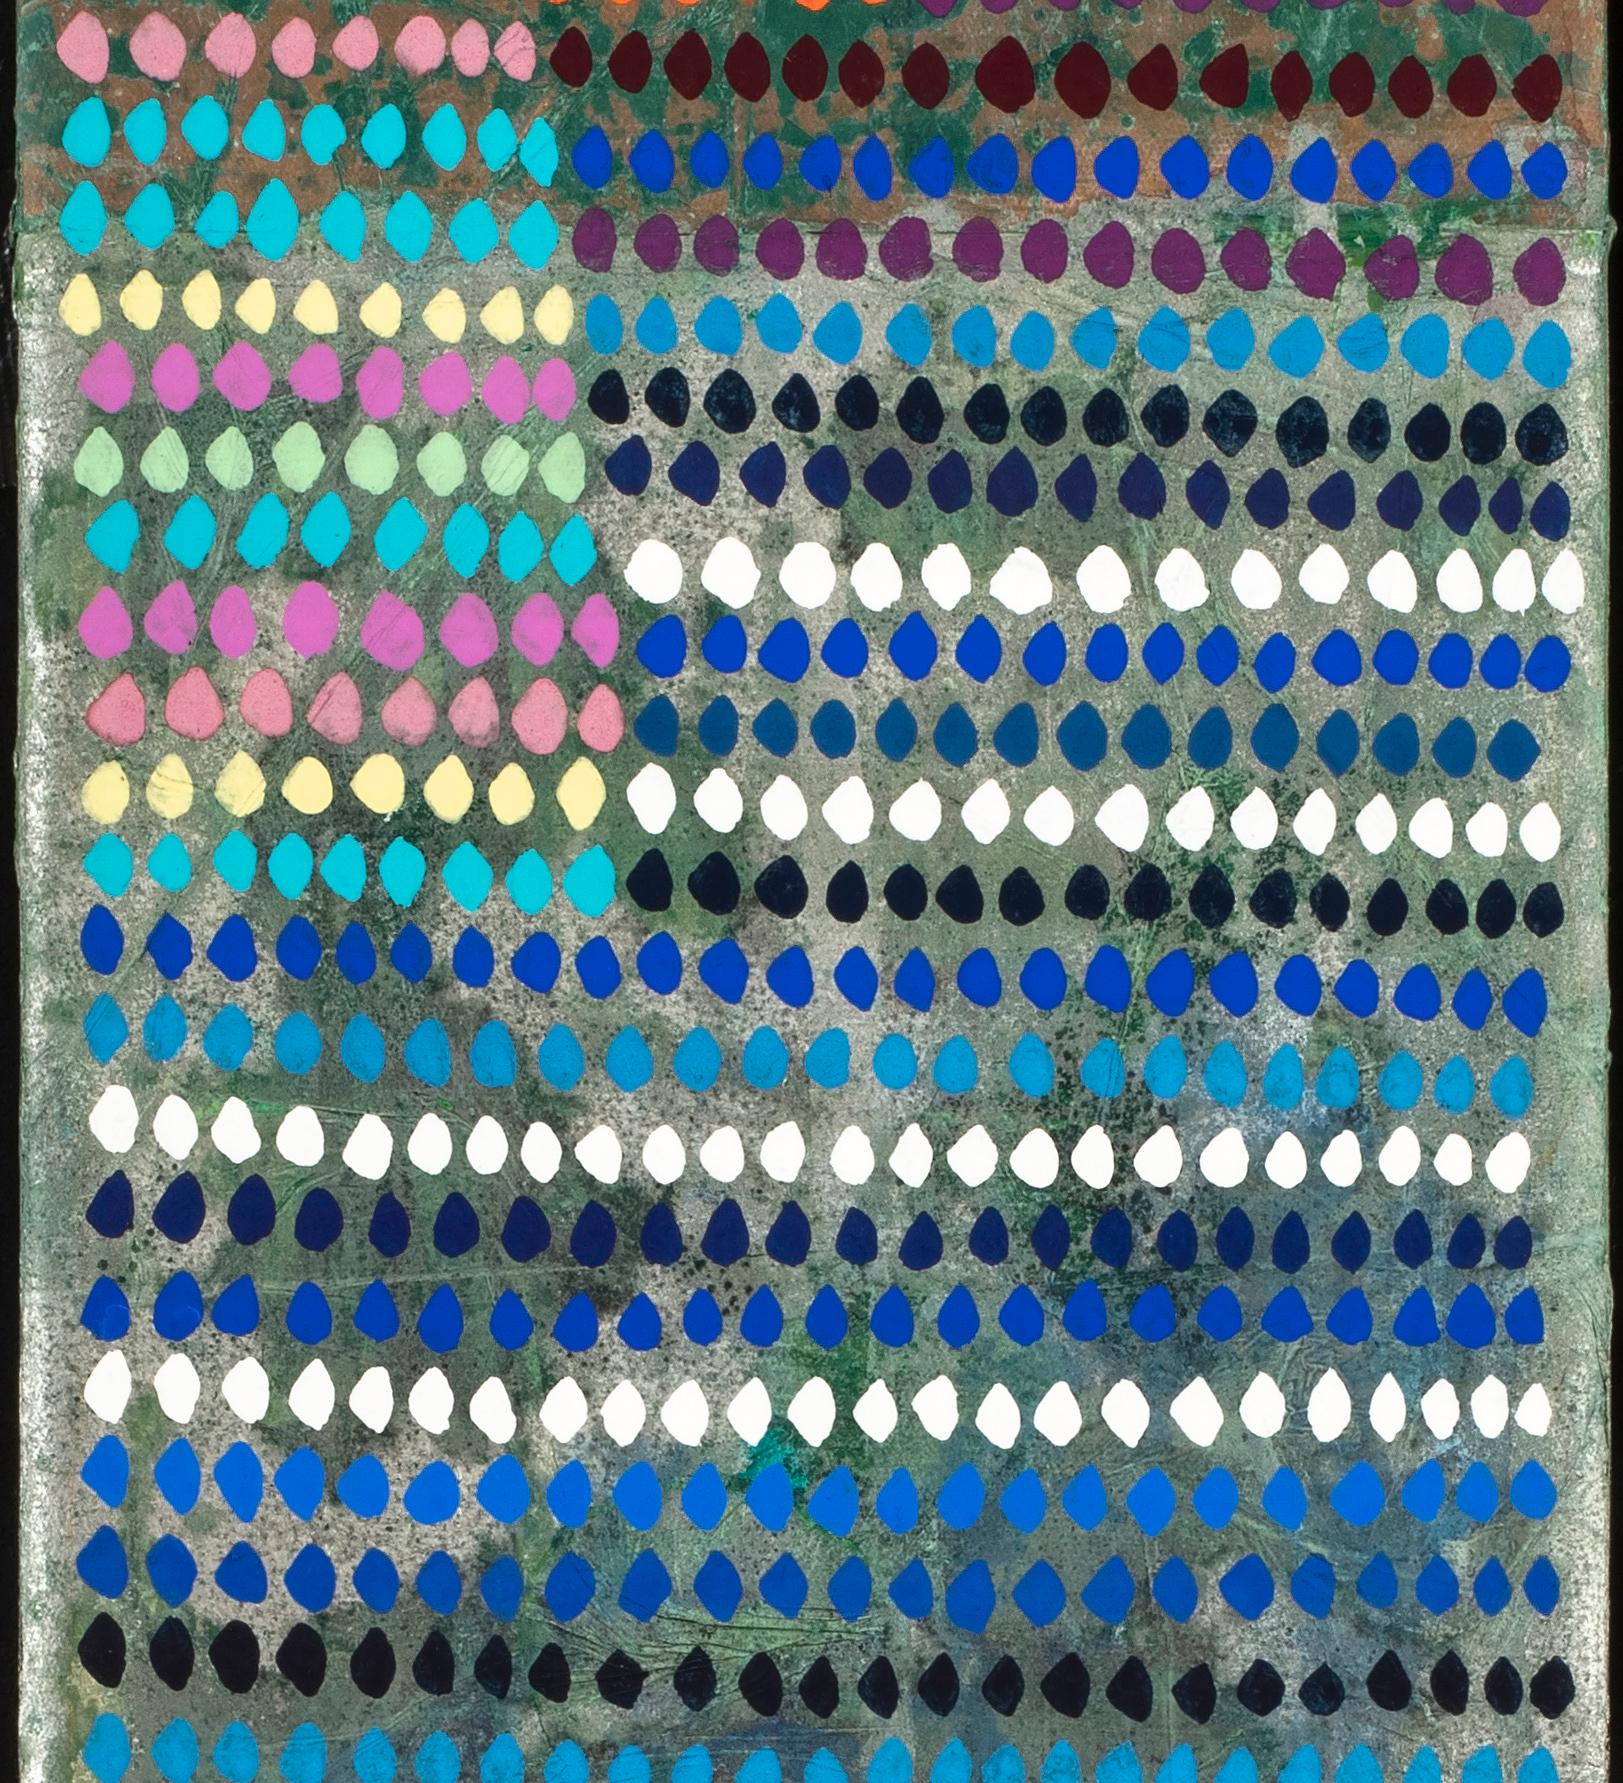 Le Jeu des Perles de Verre  - Abstract Geometric Painting by Gonçalo Ivo